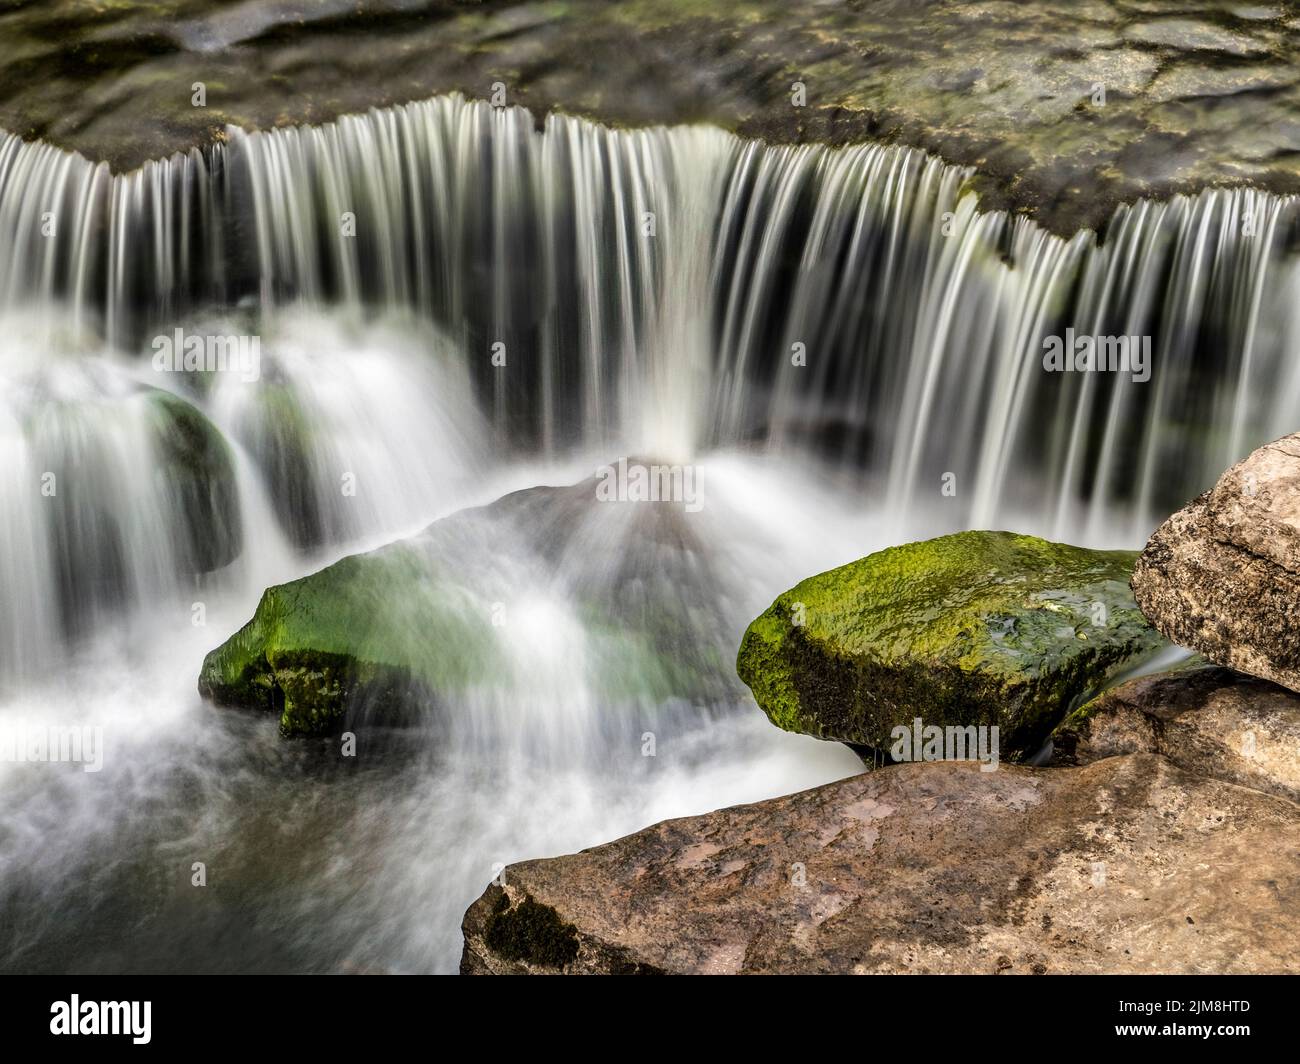 Particolare della forza inferiore, la sezione più bassa delle cascate di Aysgarth, sul fiume Ure in Wensleydale, North Yorkshire. Foto Stock